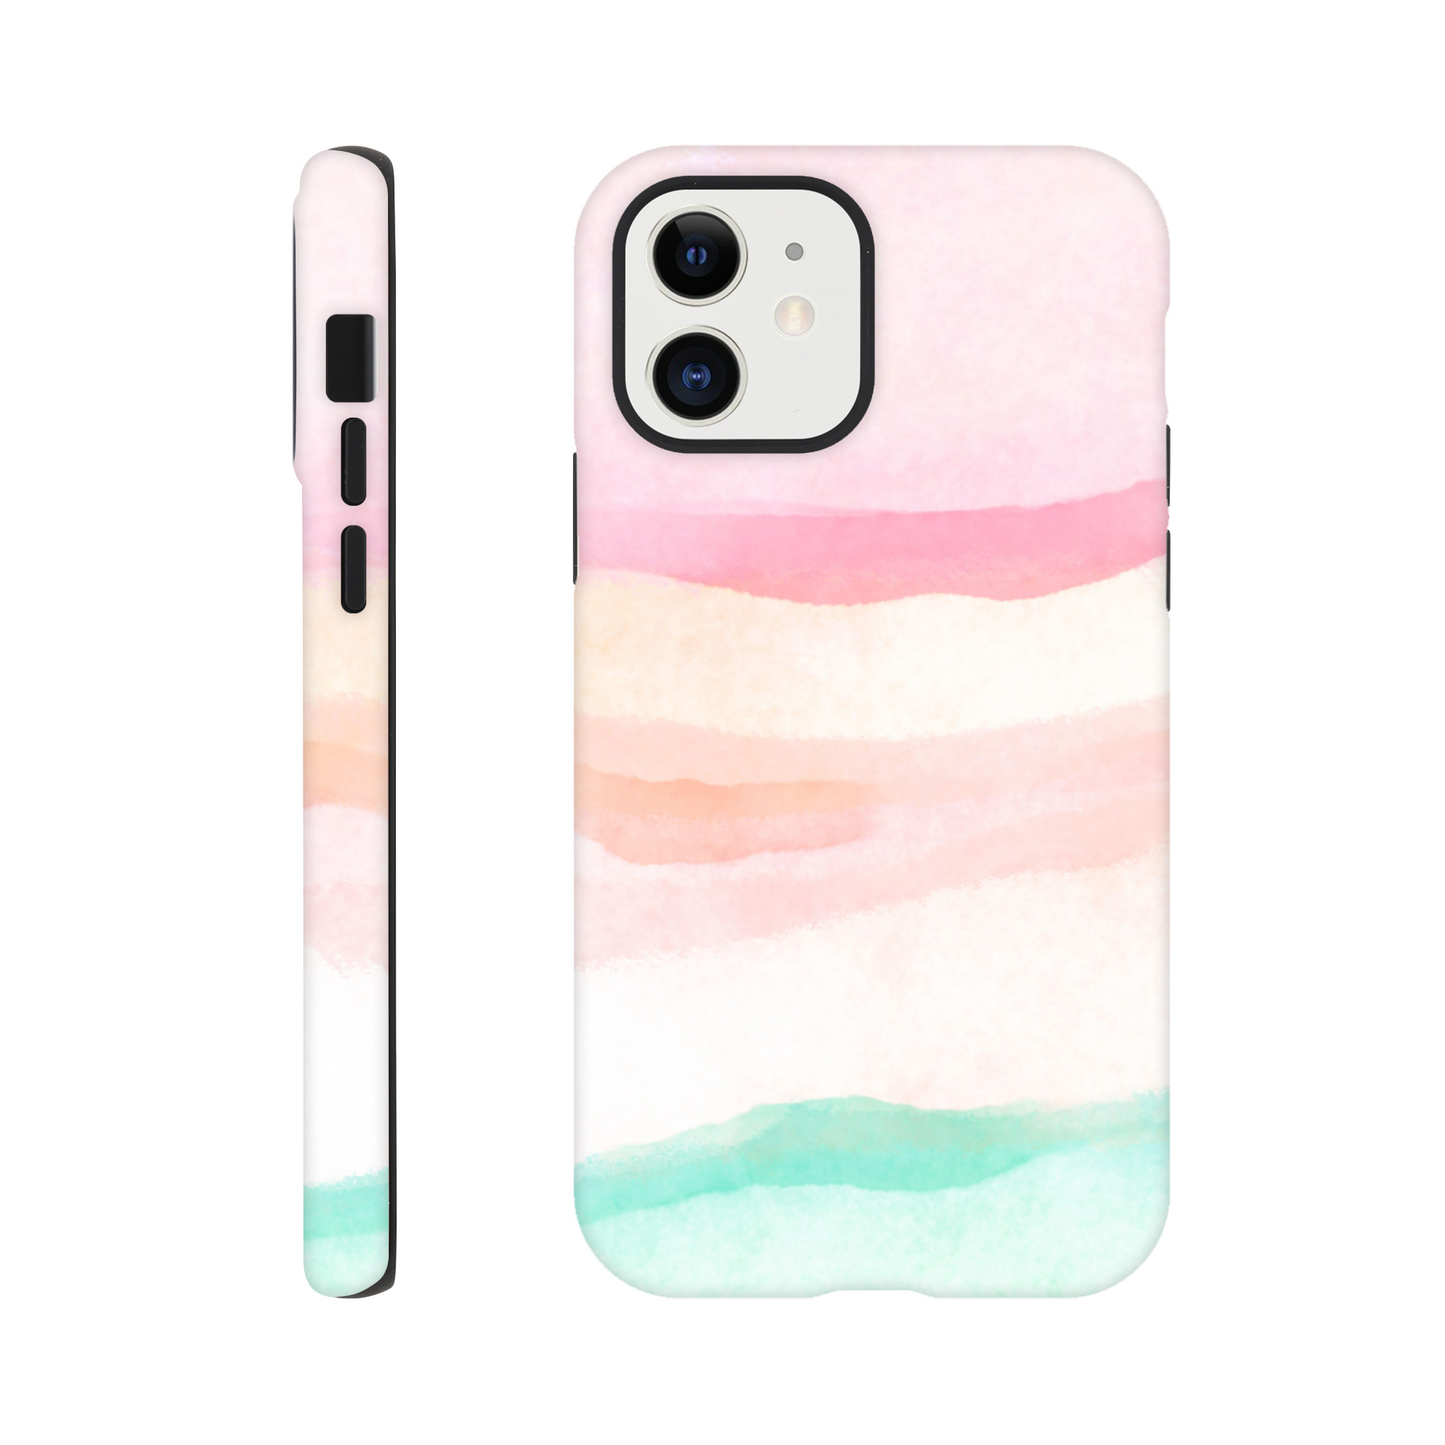 Pastels - Tough case iPhone 12 Phone Case